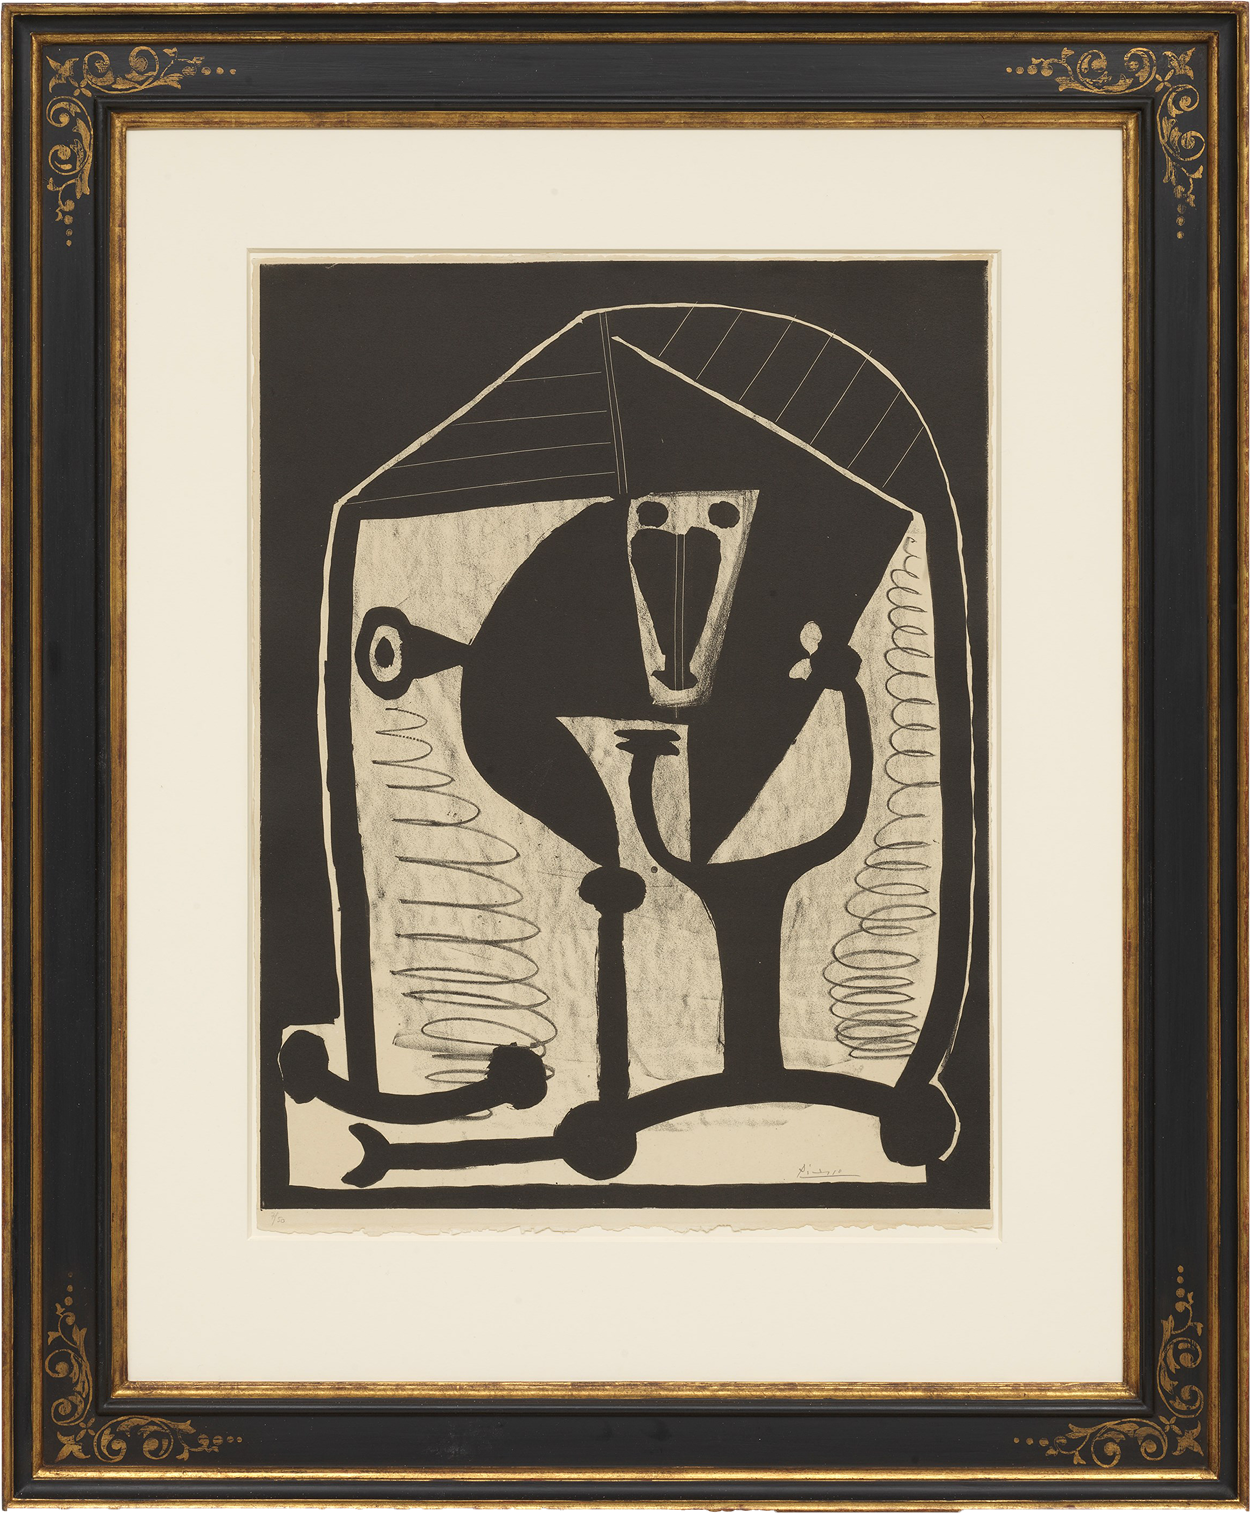 Casetta lijst - Reproductie voor Figure door Pablo Picasso, 1948 - 17e eeuw